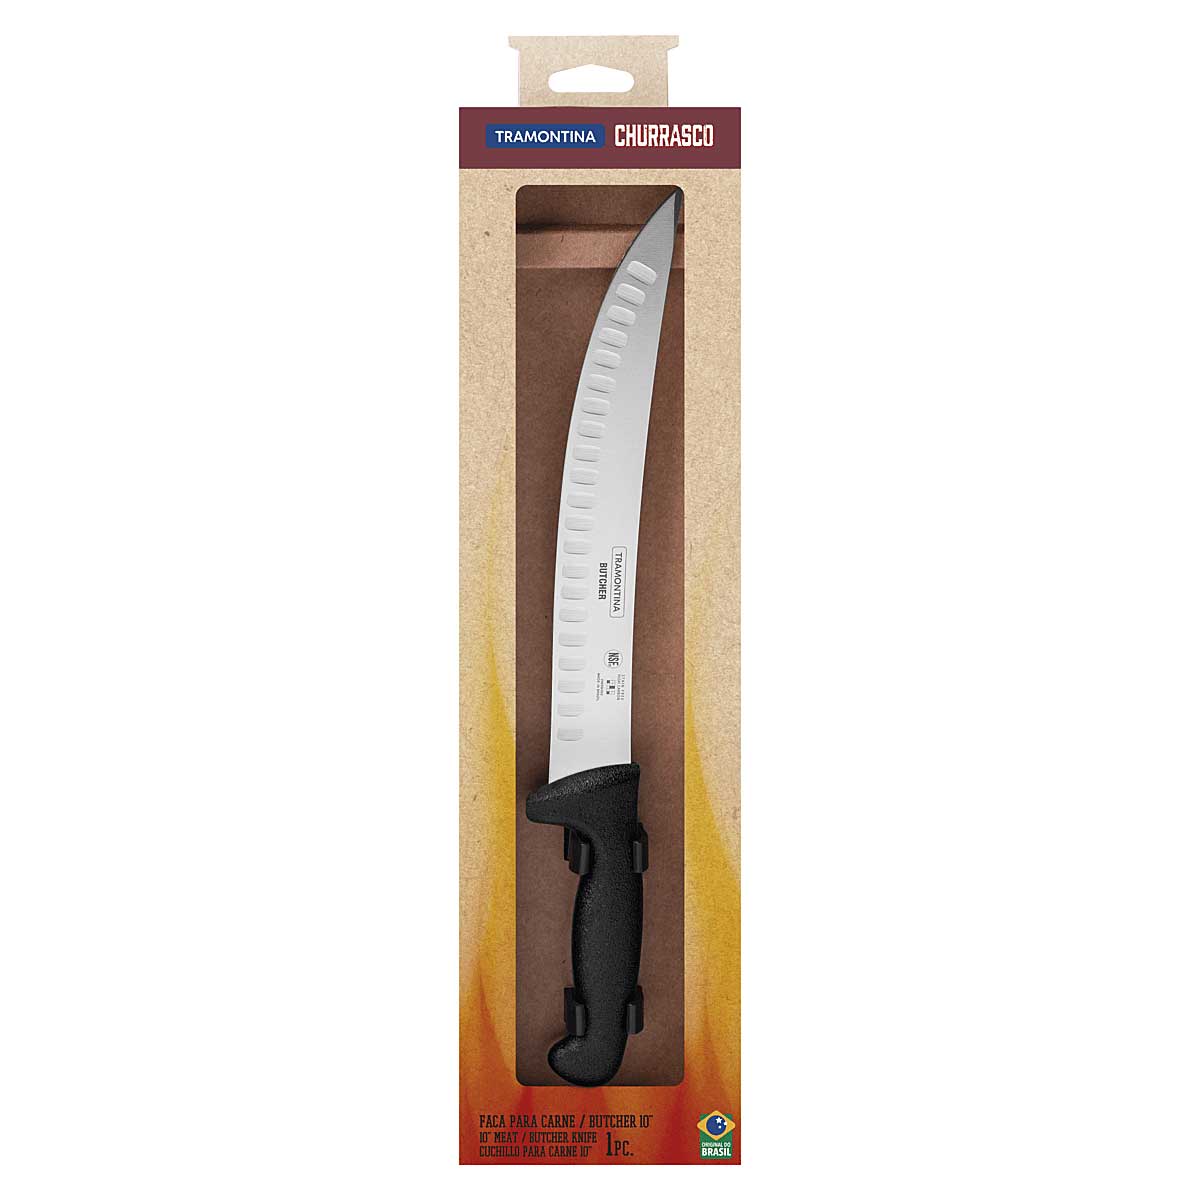 Mejores cuchillos para cortar carne - Masmit